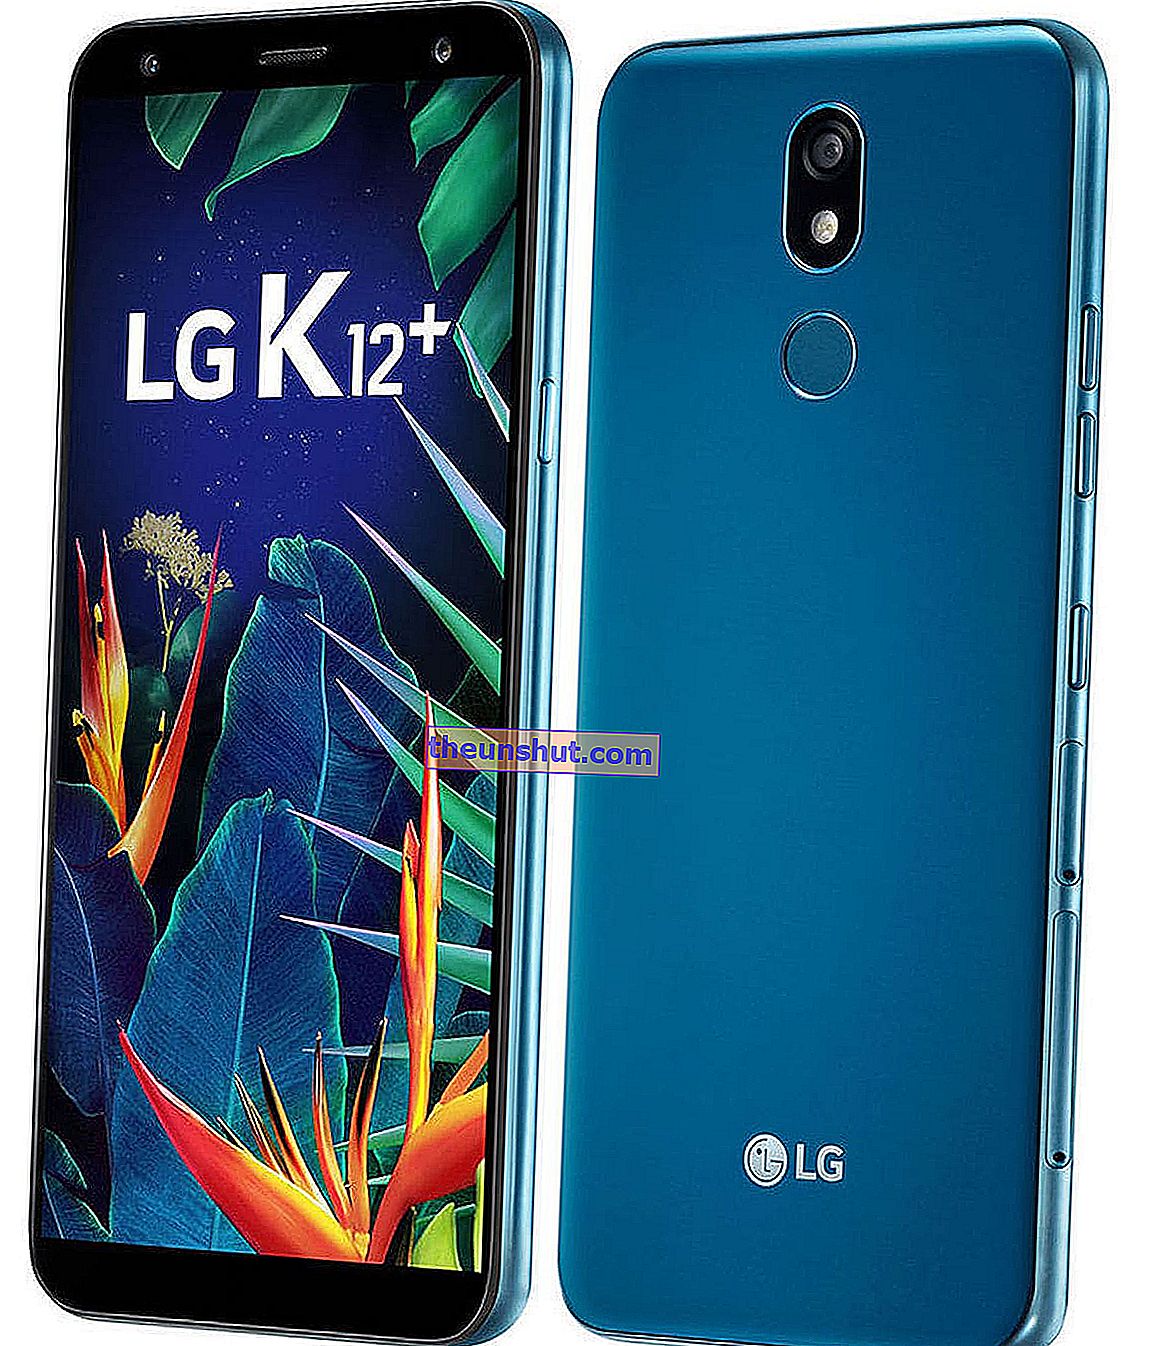 LG K12 +, jellemzői, ára és véleménye